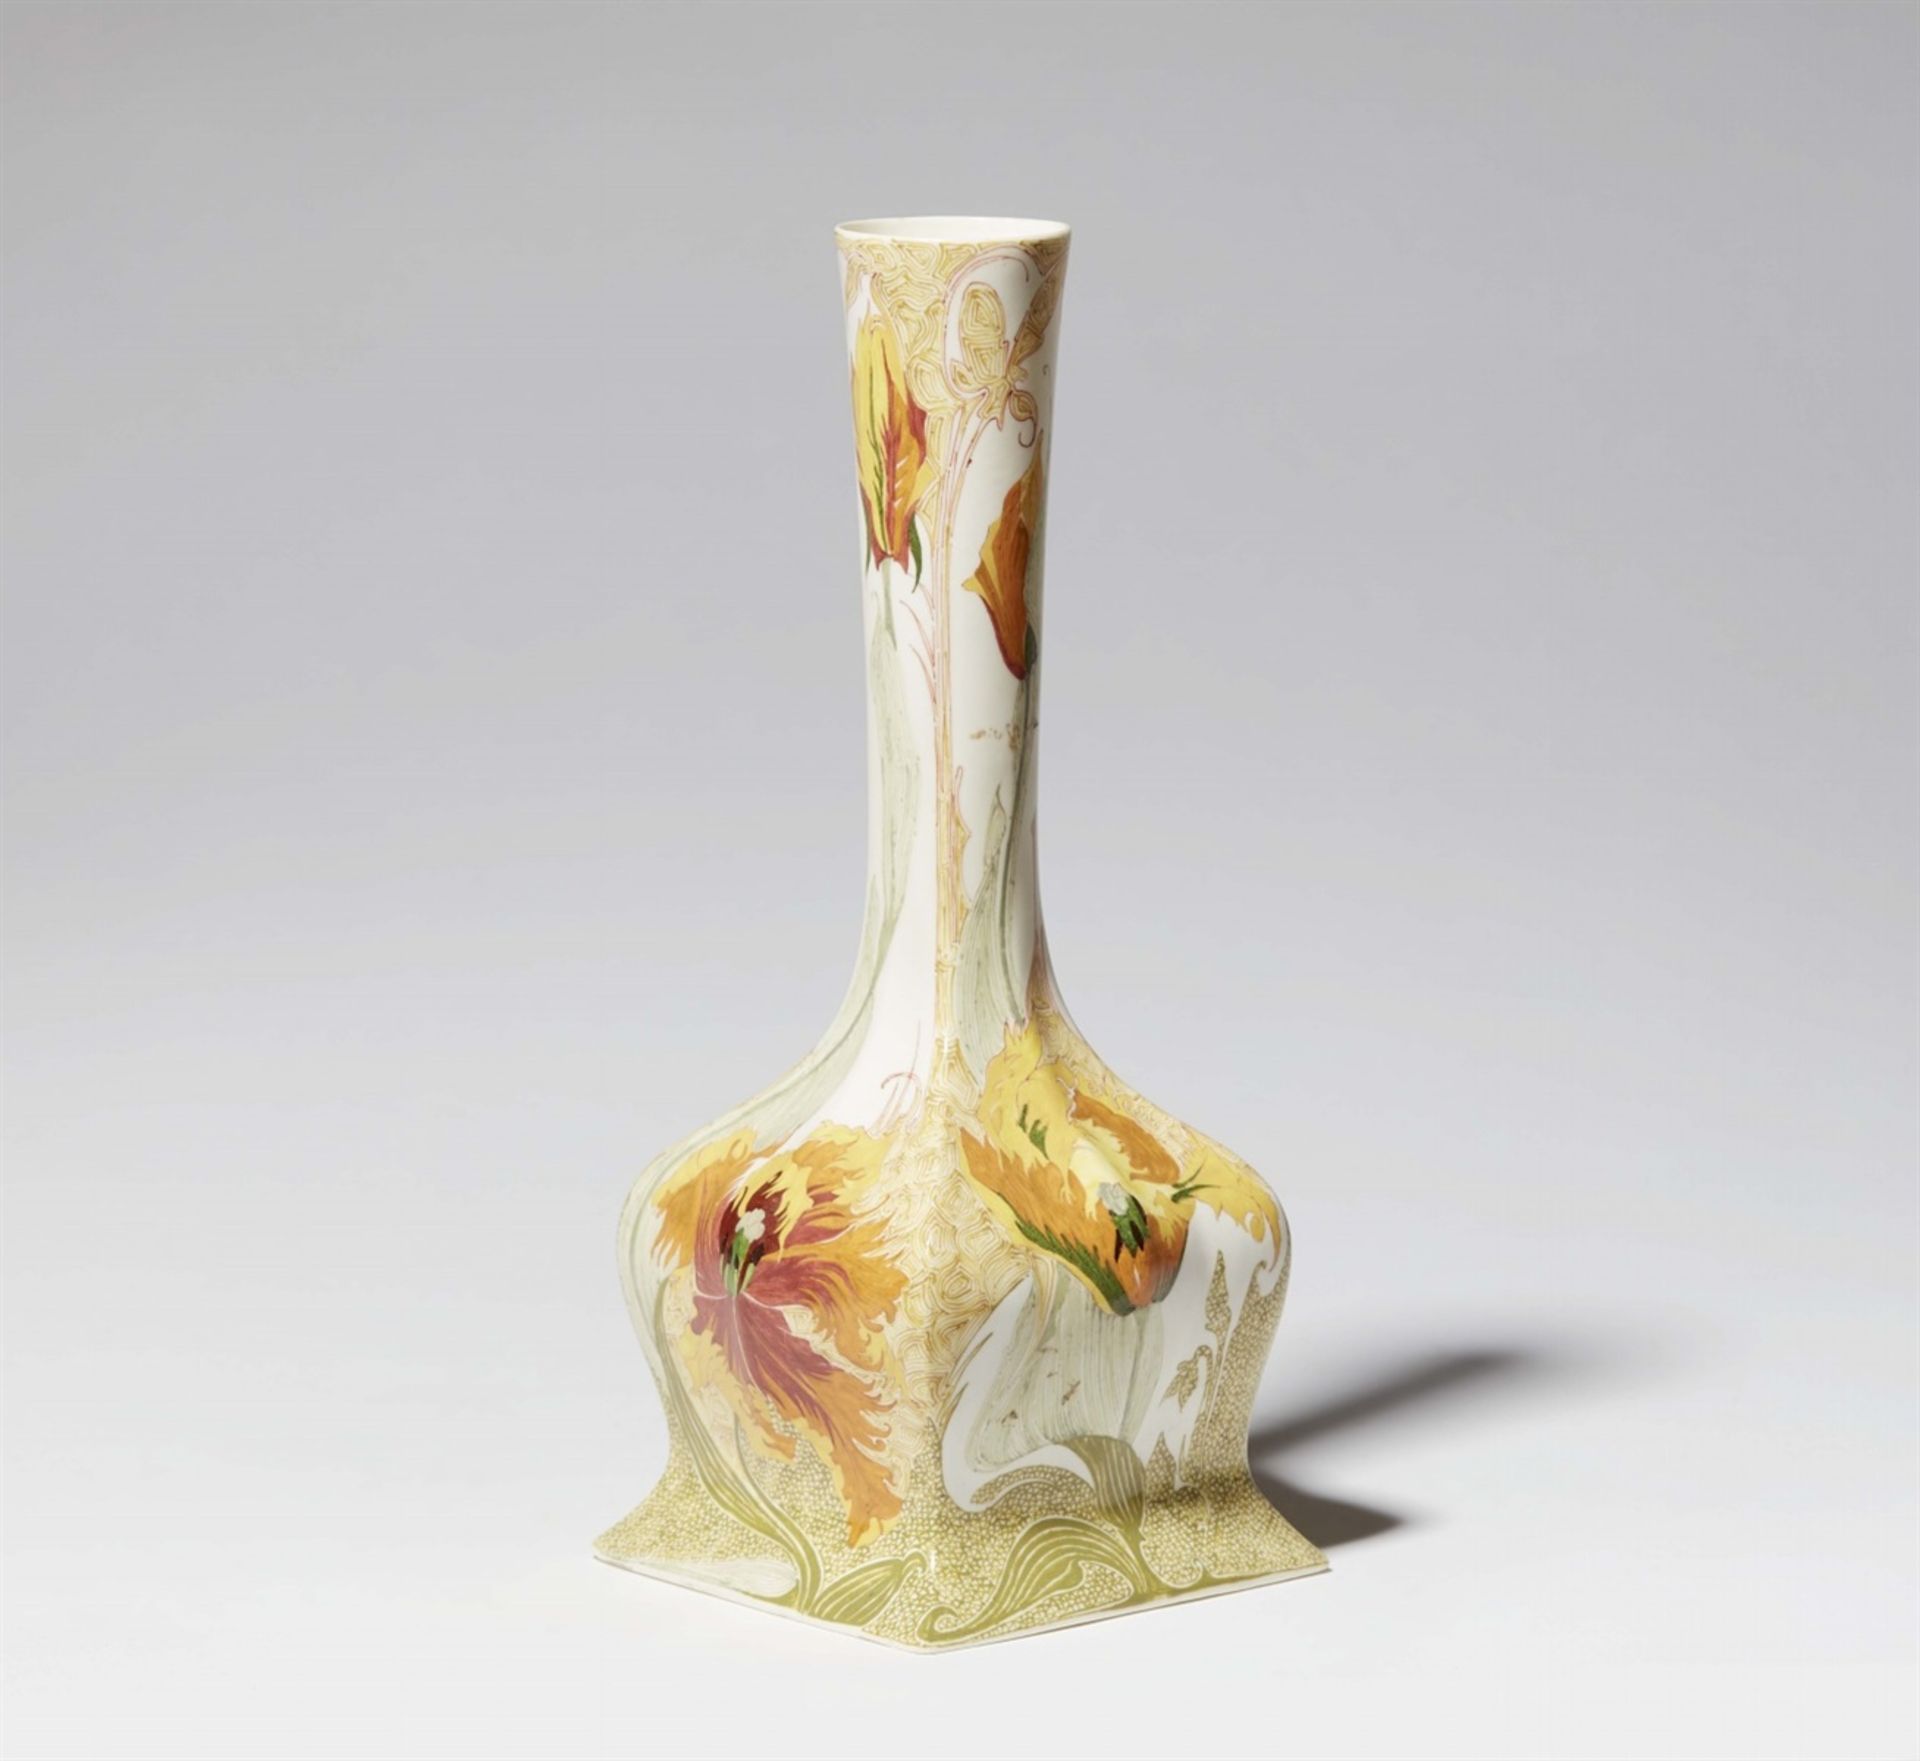 Holländische Vase mit PapageientulpenEierschalenporzellan mit farbigem Aufglasurdekor. Graue